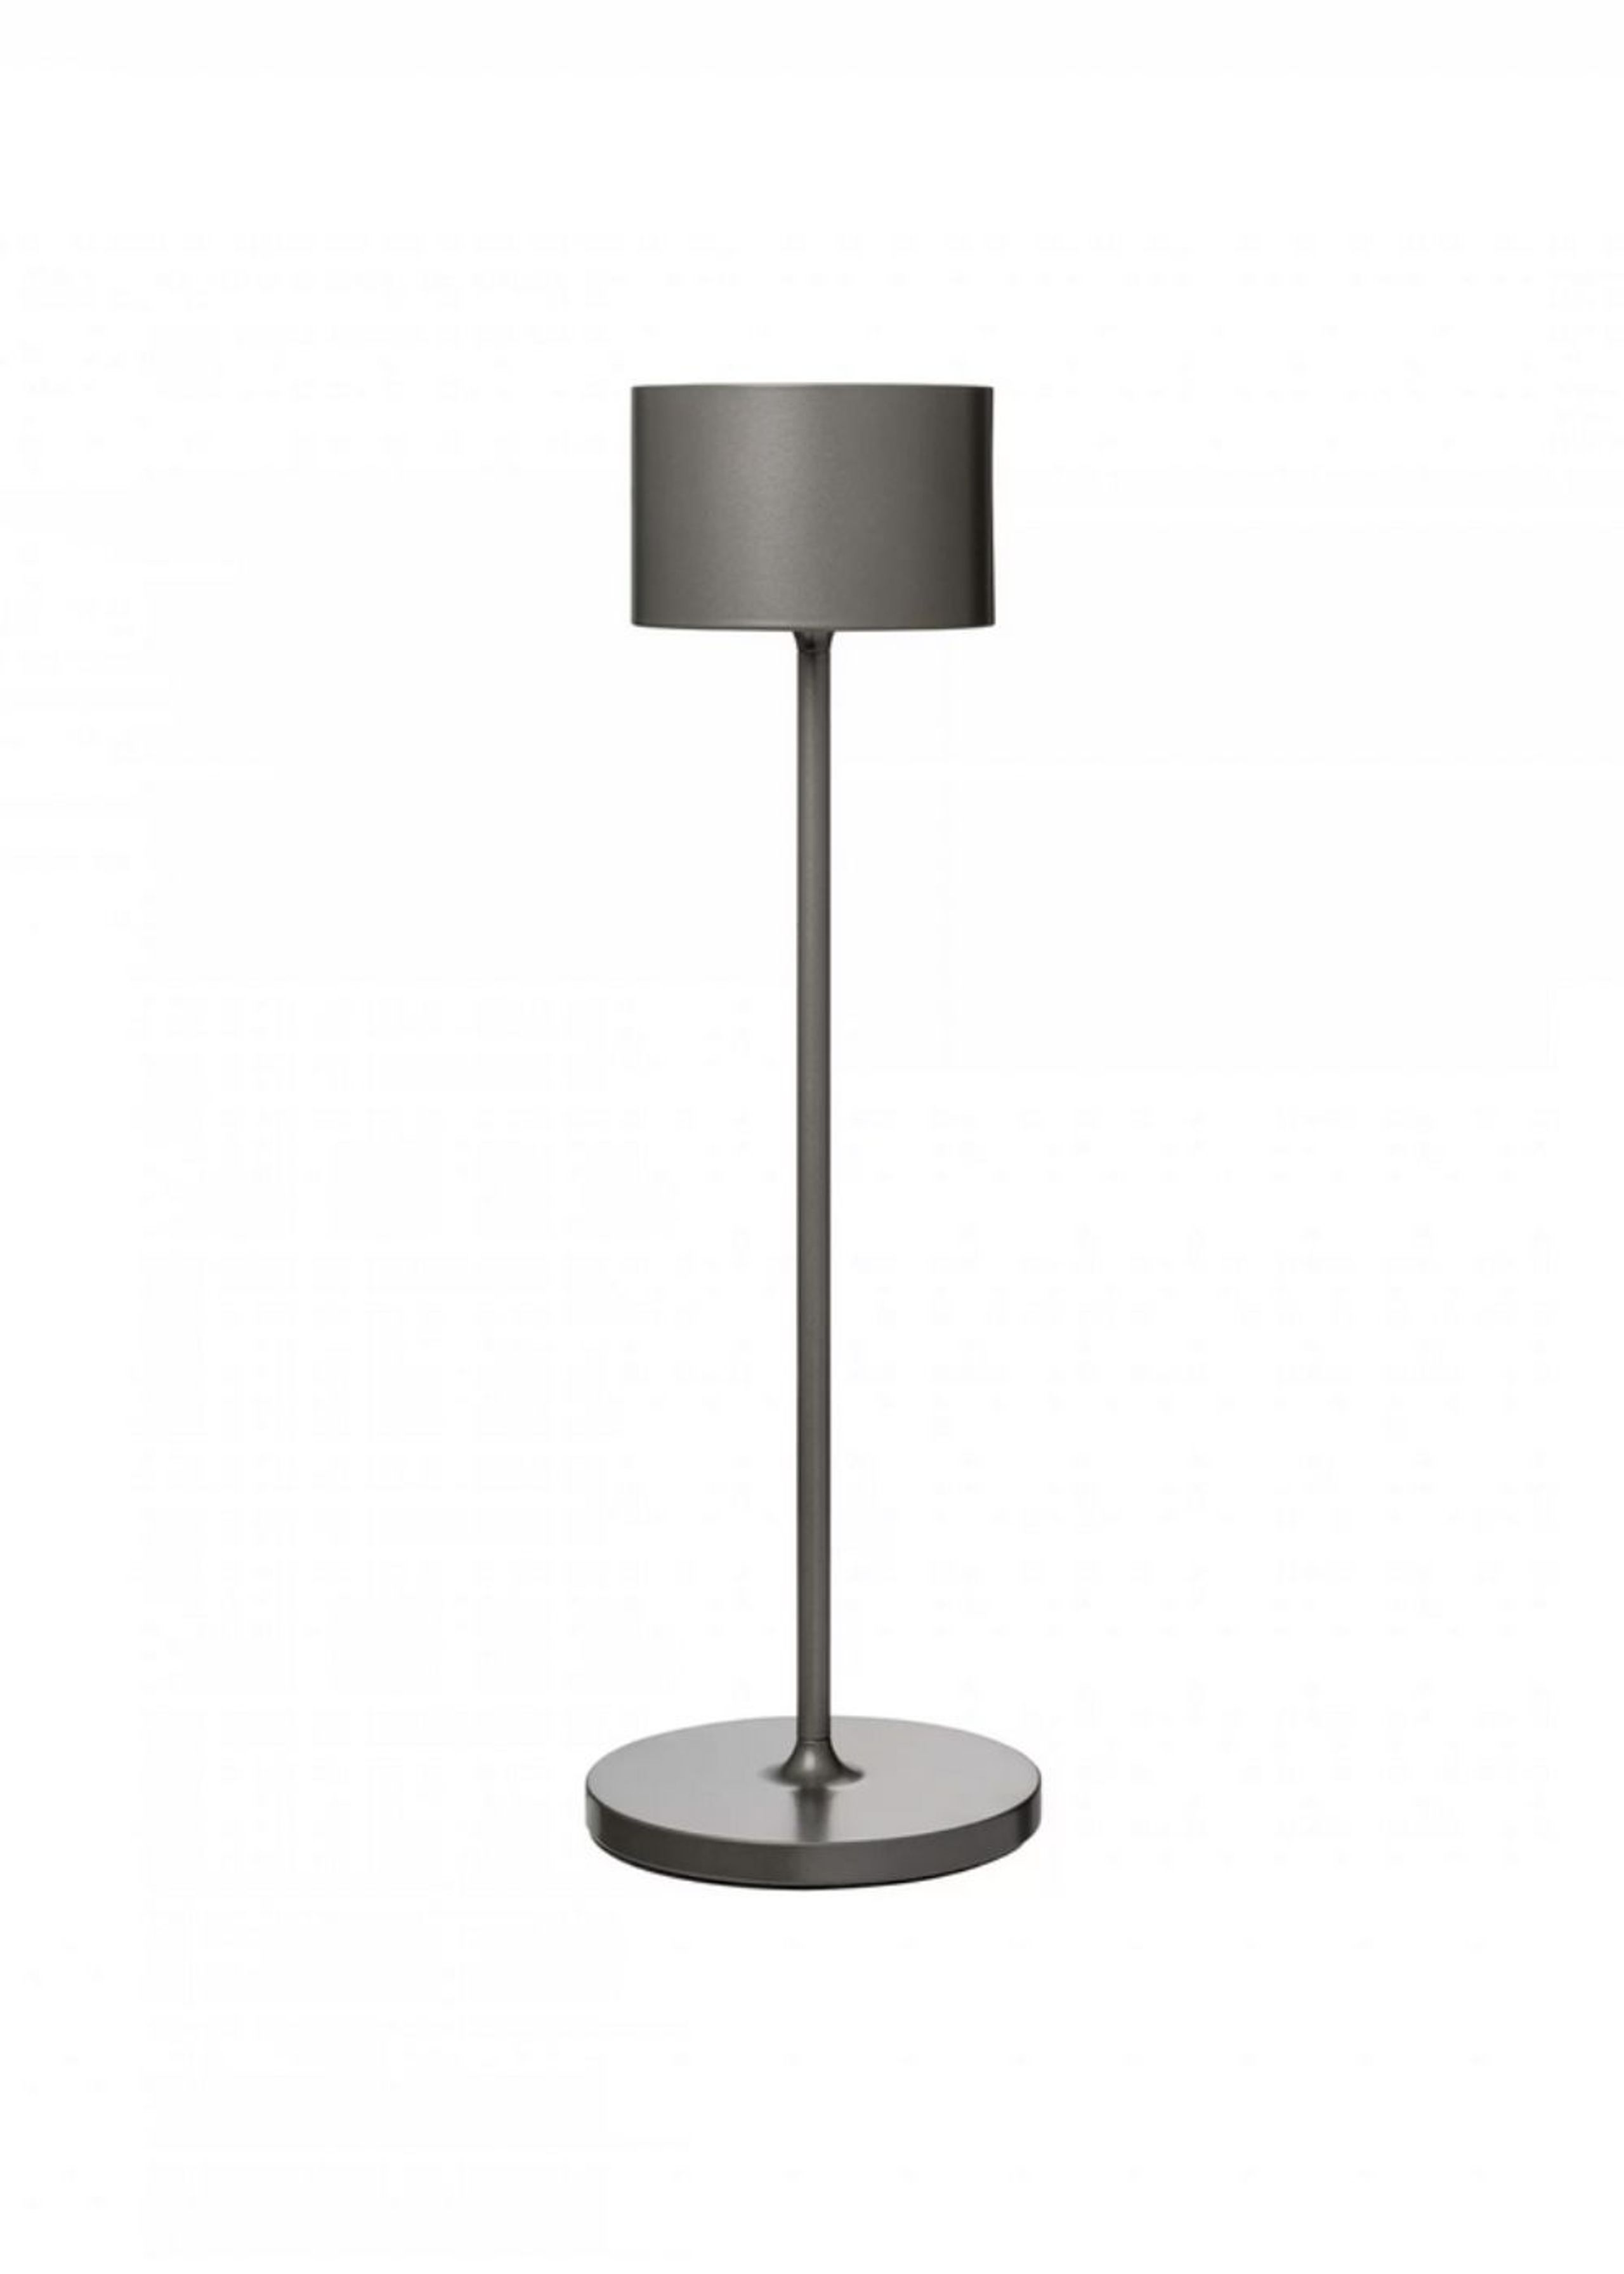 Blomus - Tafellamp - FAROL Mobile LED Table Lamp - Burned Metal, Metallic Finish